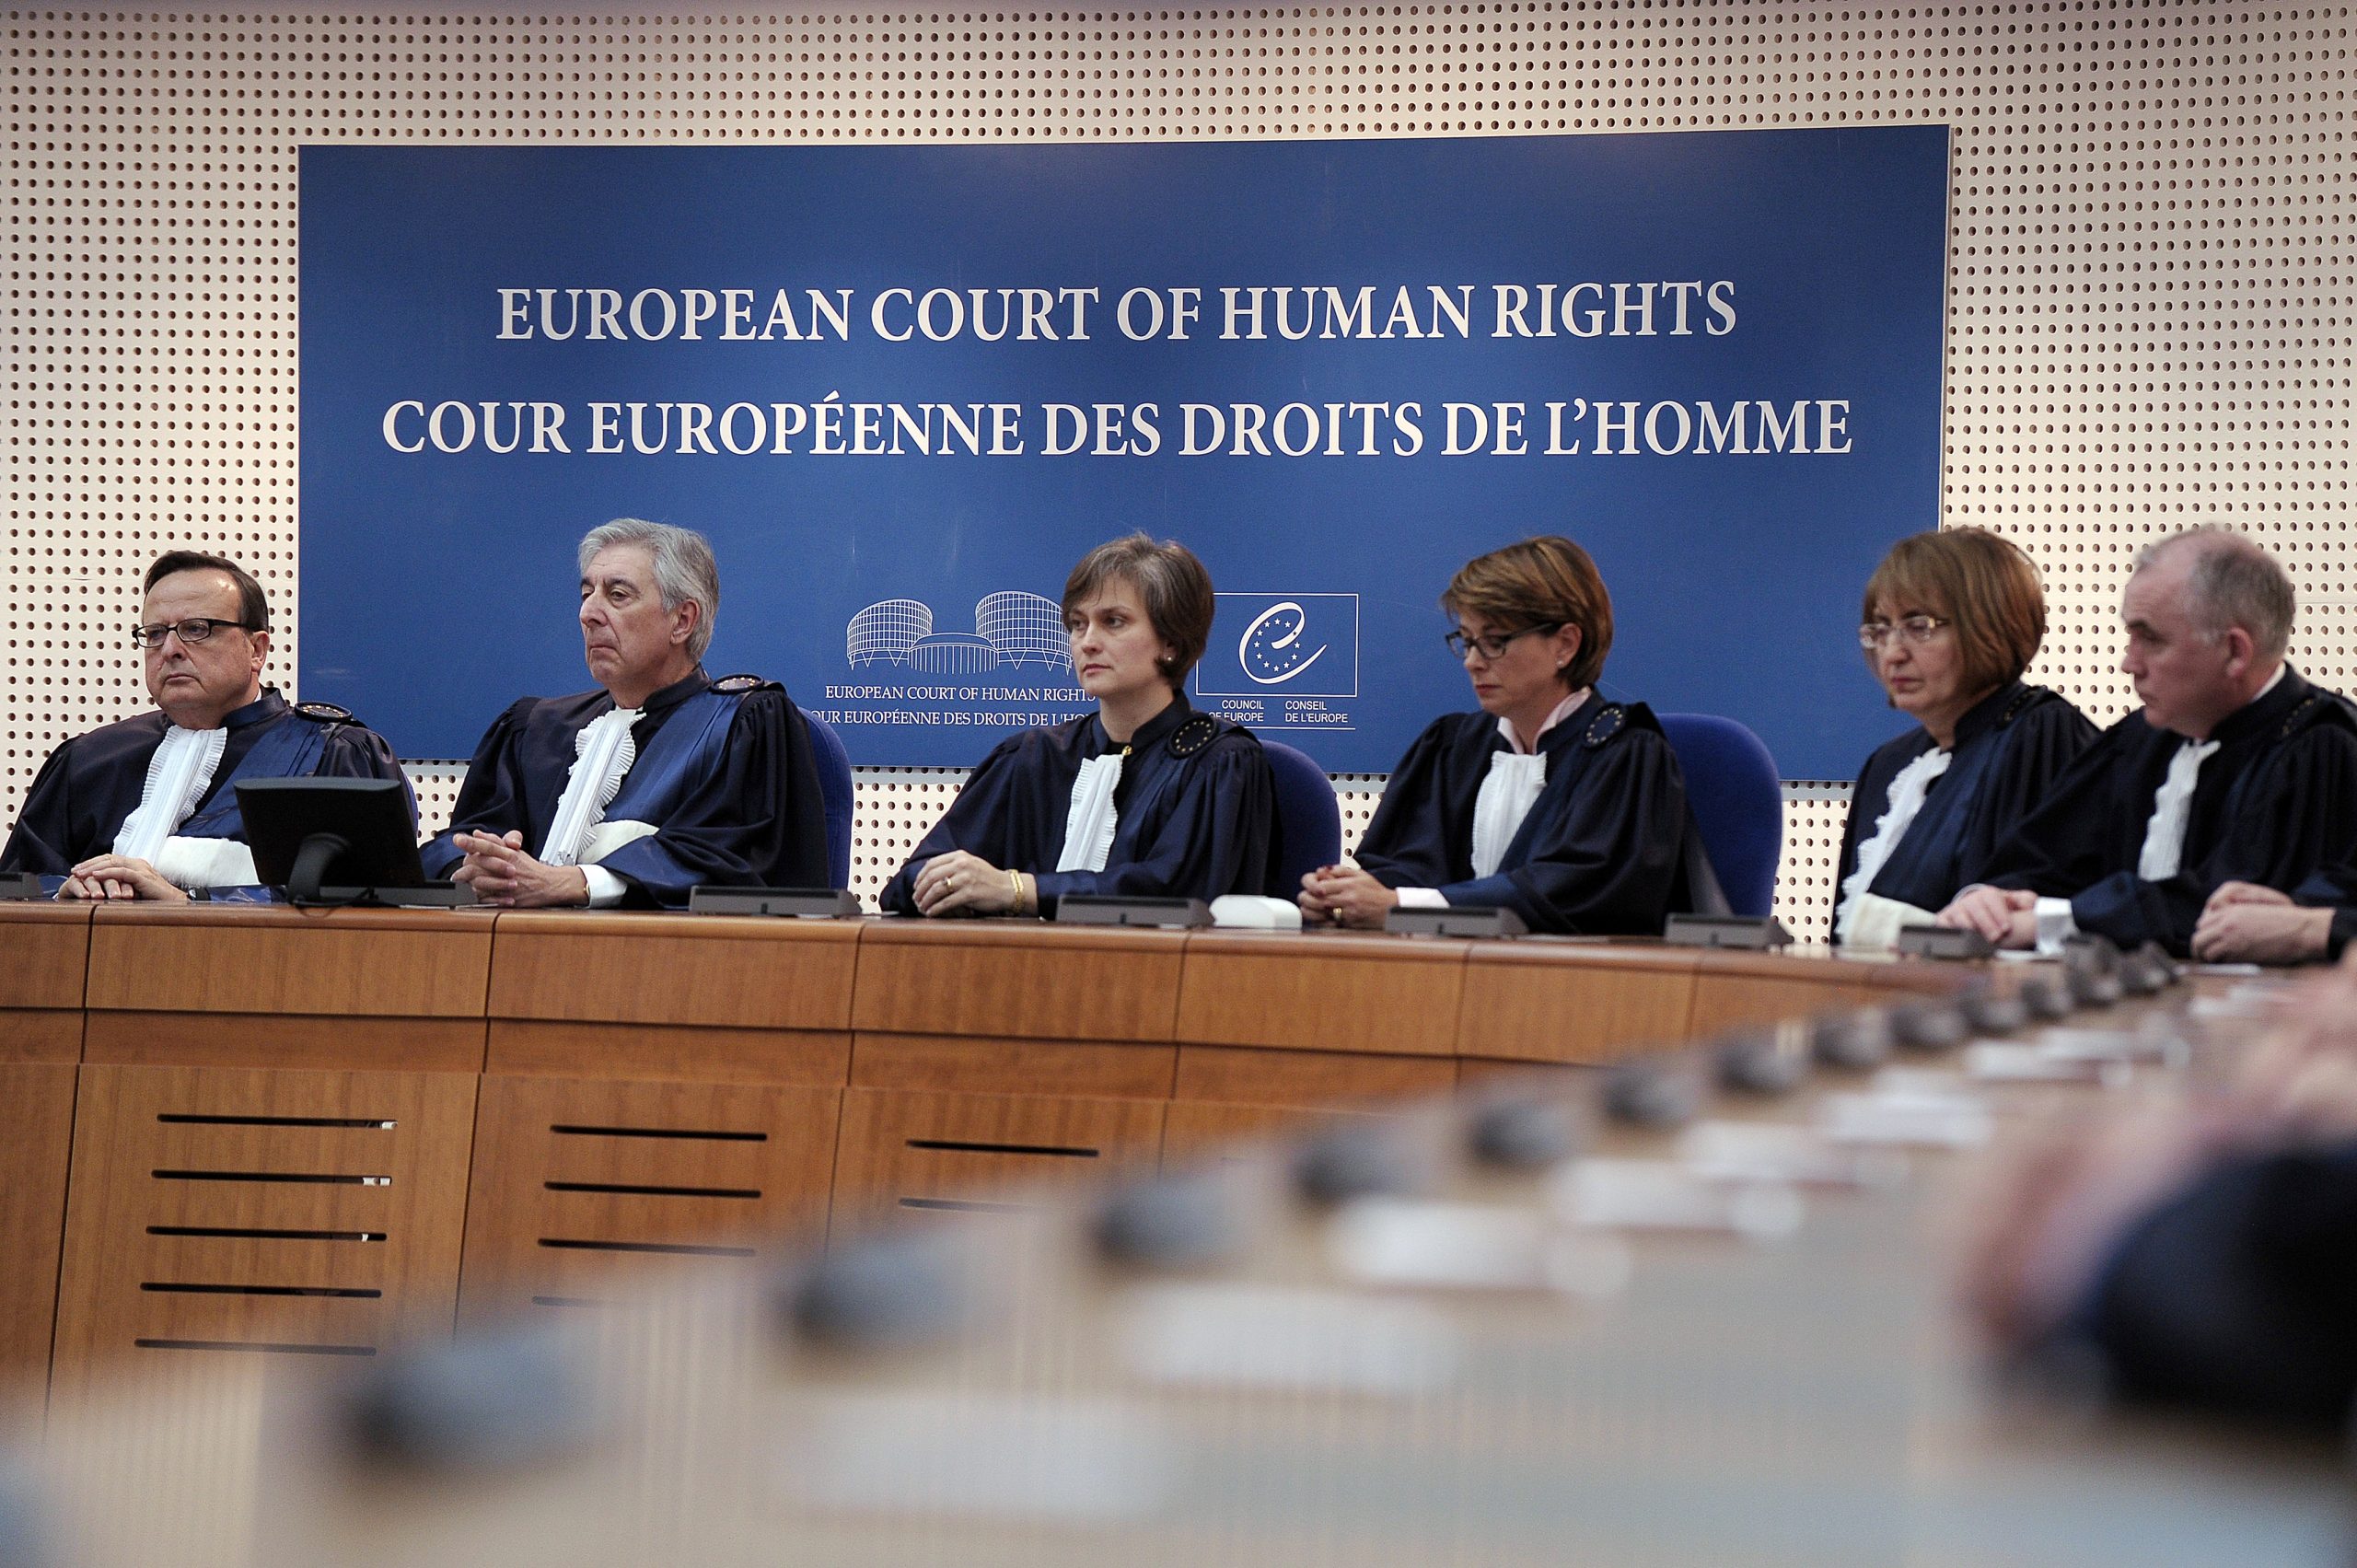 Международный европейский суд. Совет Европы и Европейский суд по правам человека. Заседание европейского суда по правам человека. Европейский суд по правам человека в Страсбурге. Европейская комиссия по правам человека.